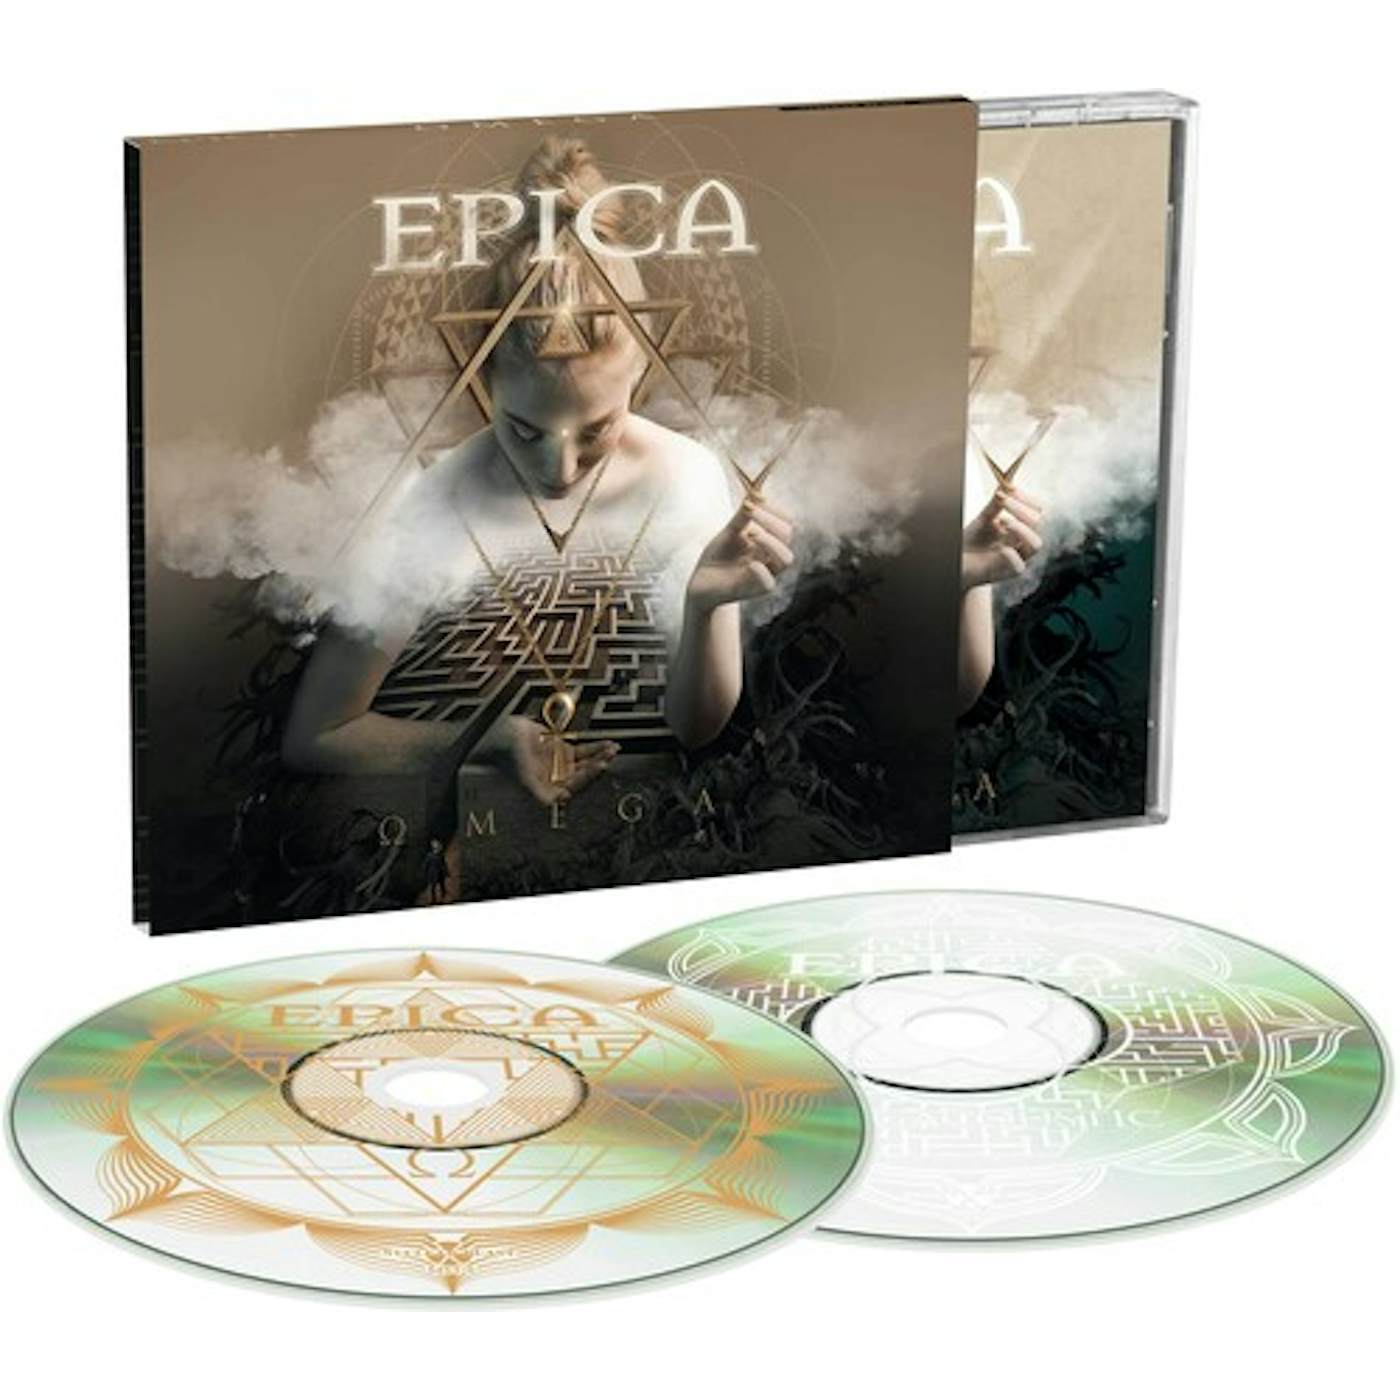 Epica OMEGA (LIMITED EDITION) (2CD SET) CD